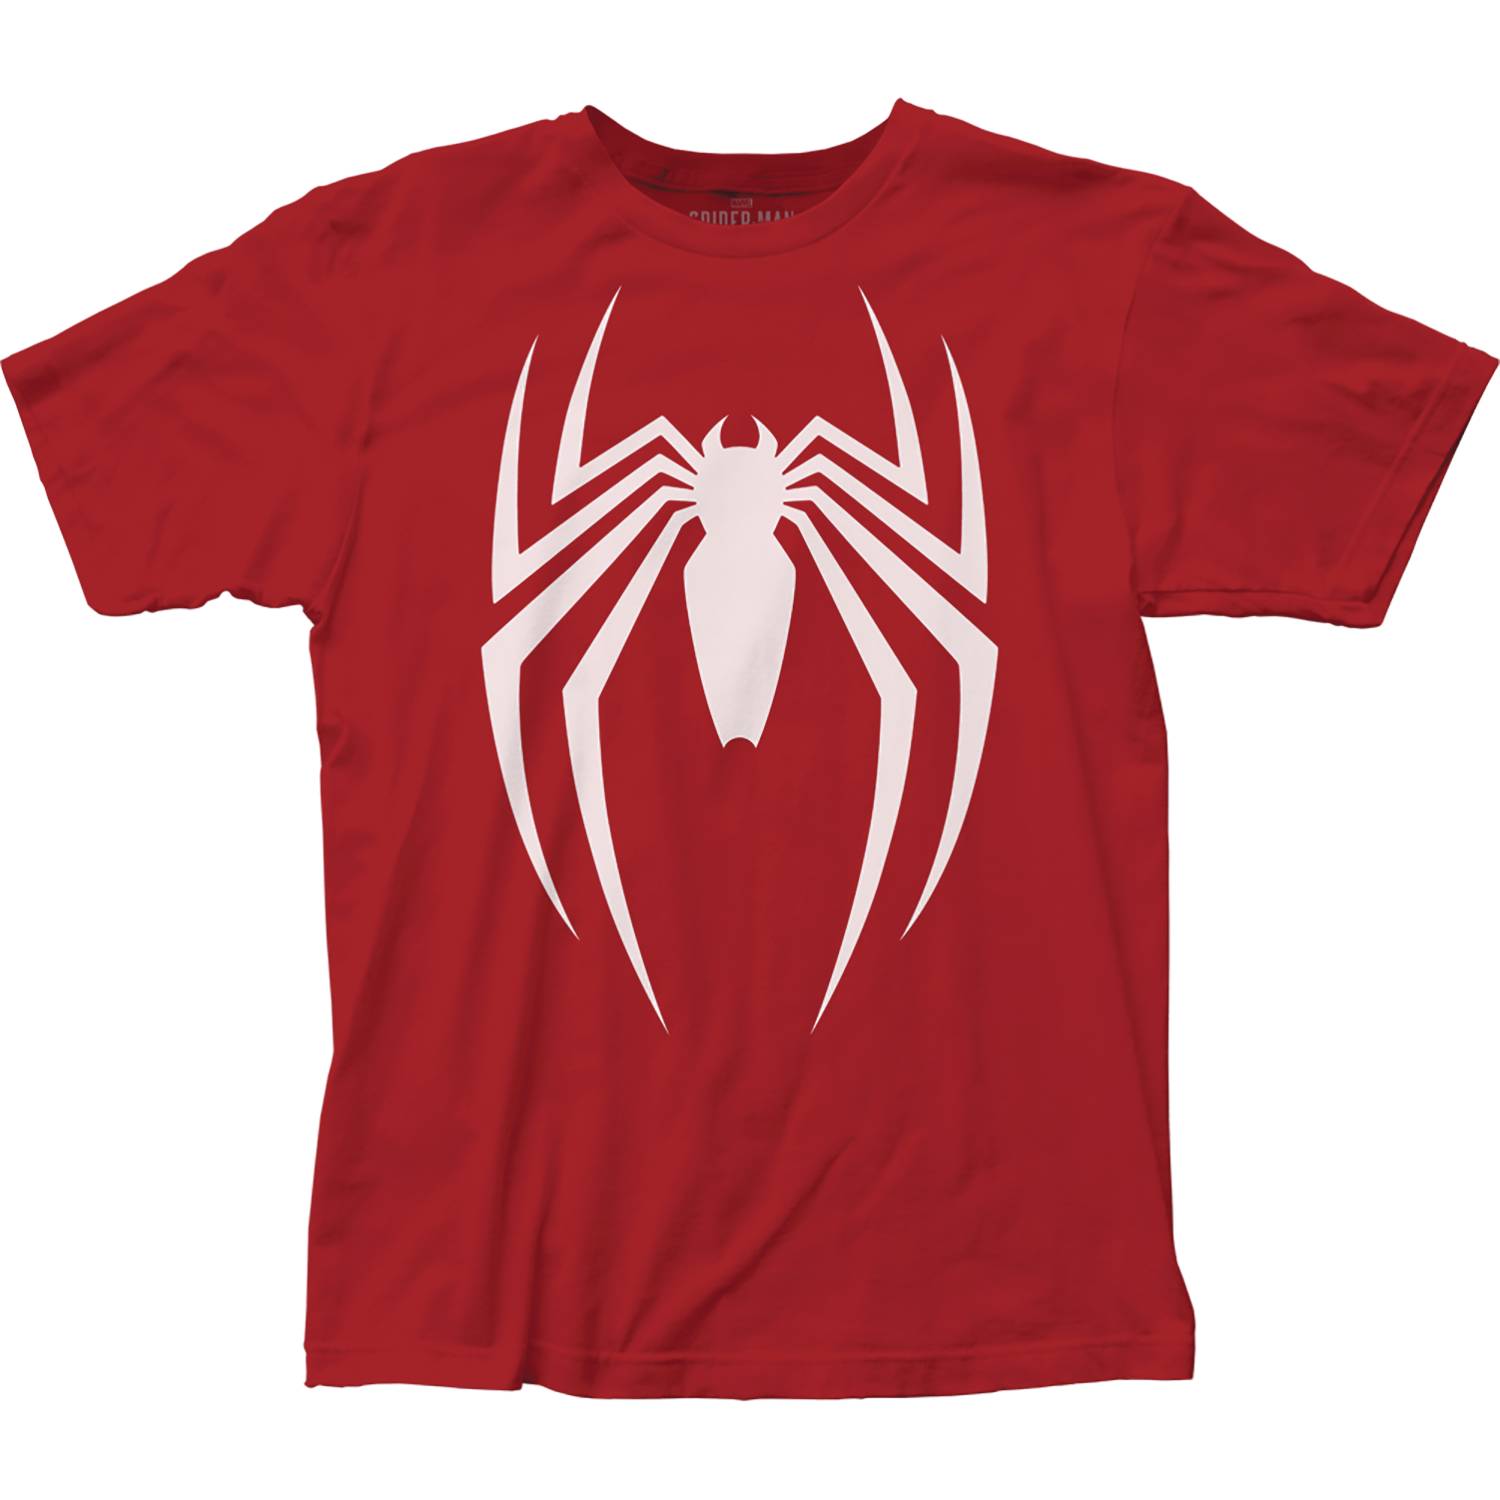 Spider-Man Video Game Logo T-Shirt Large